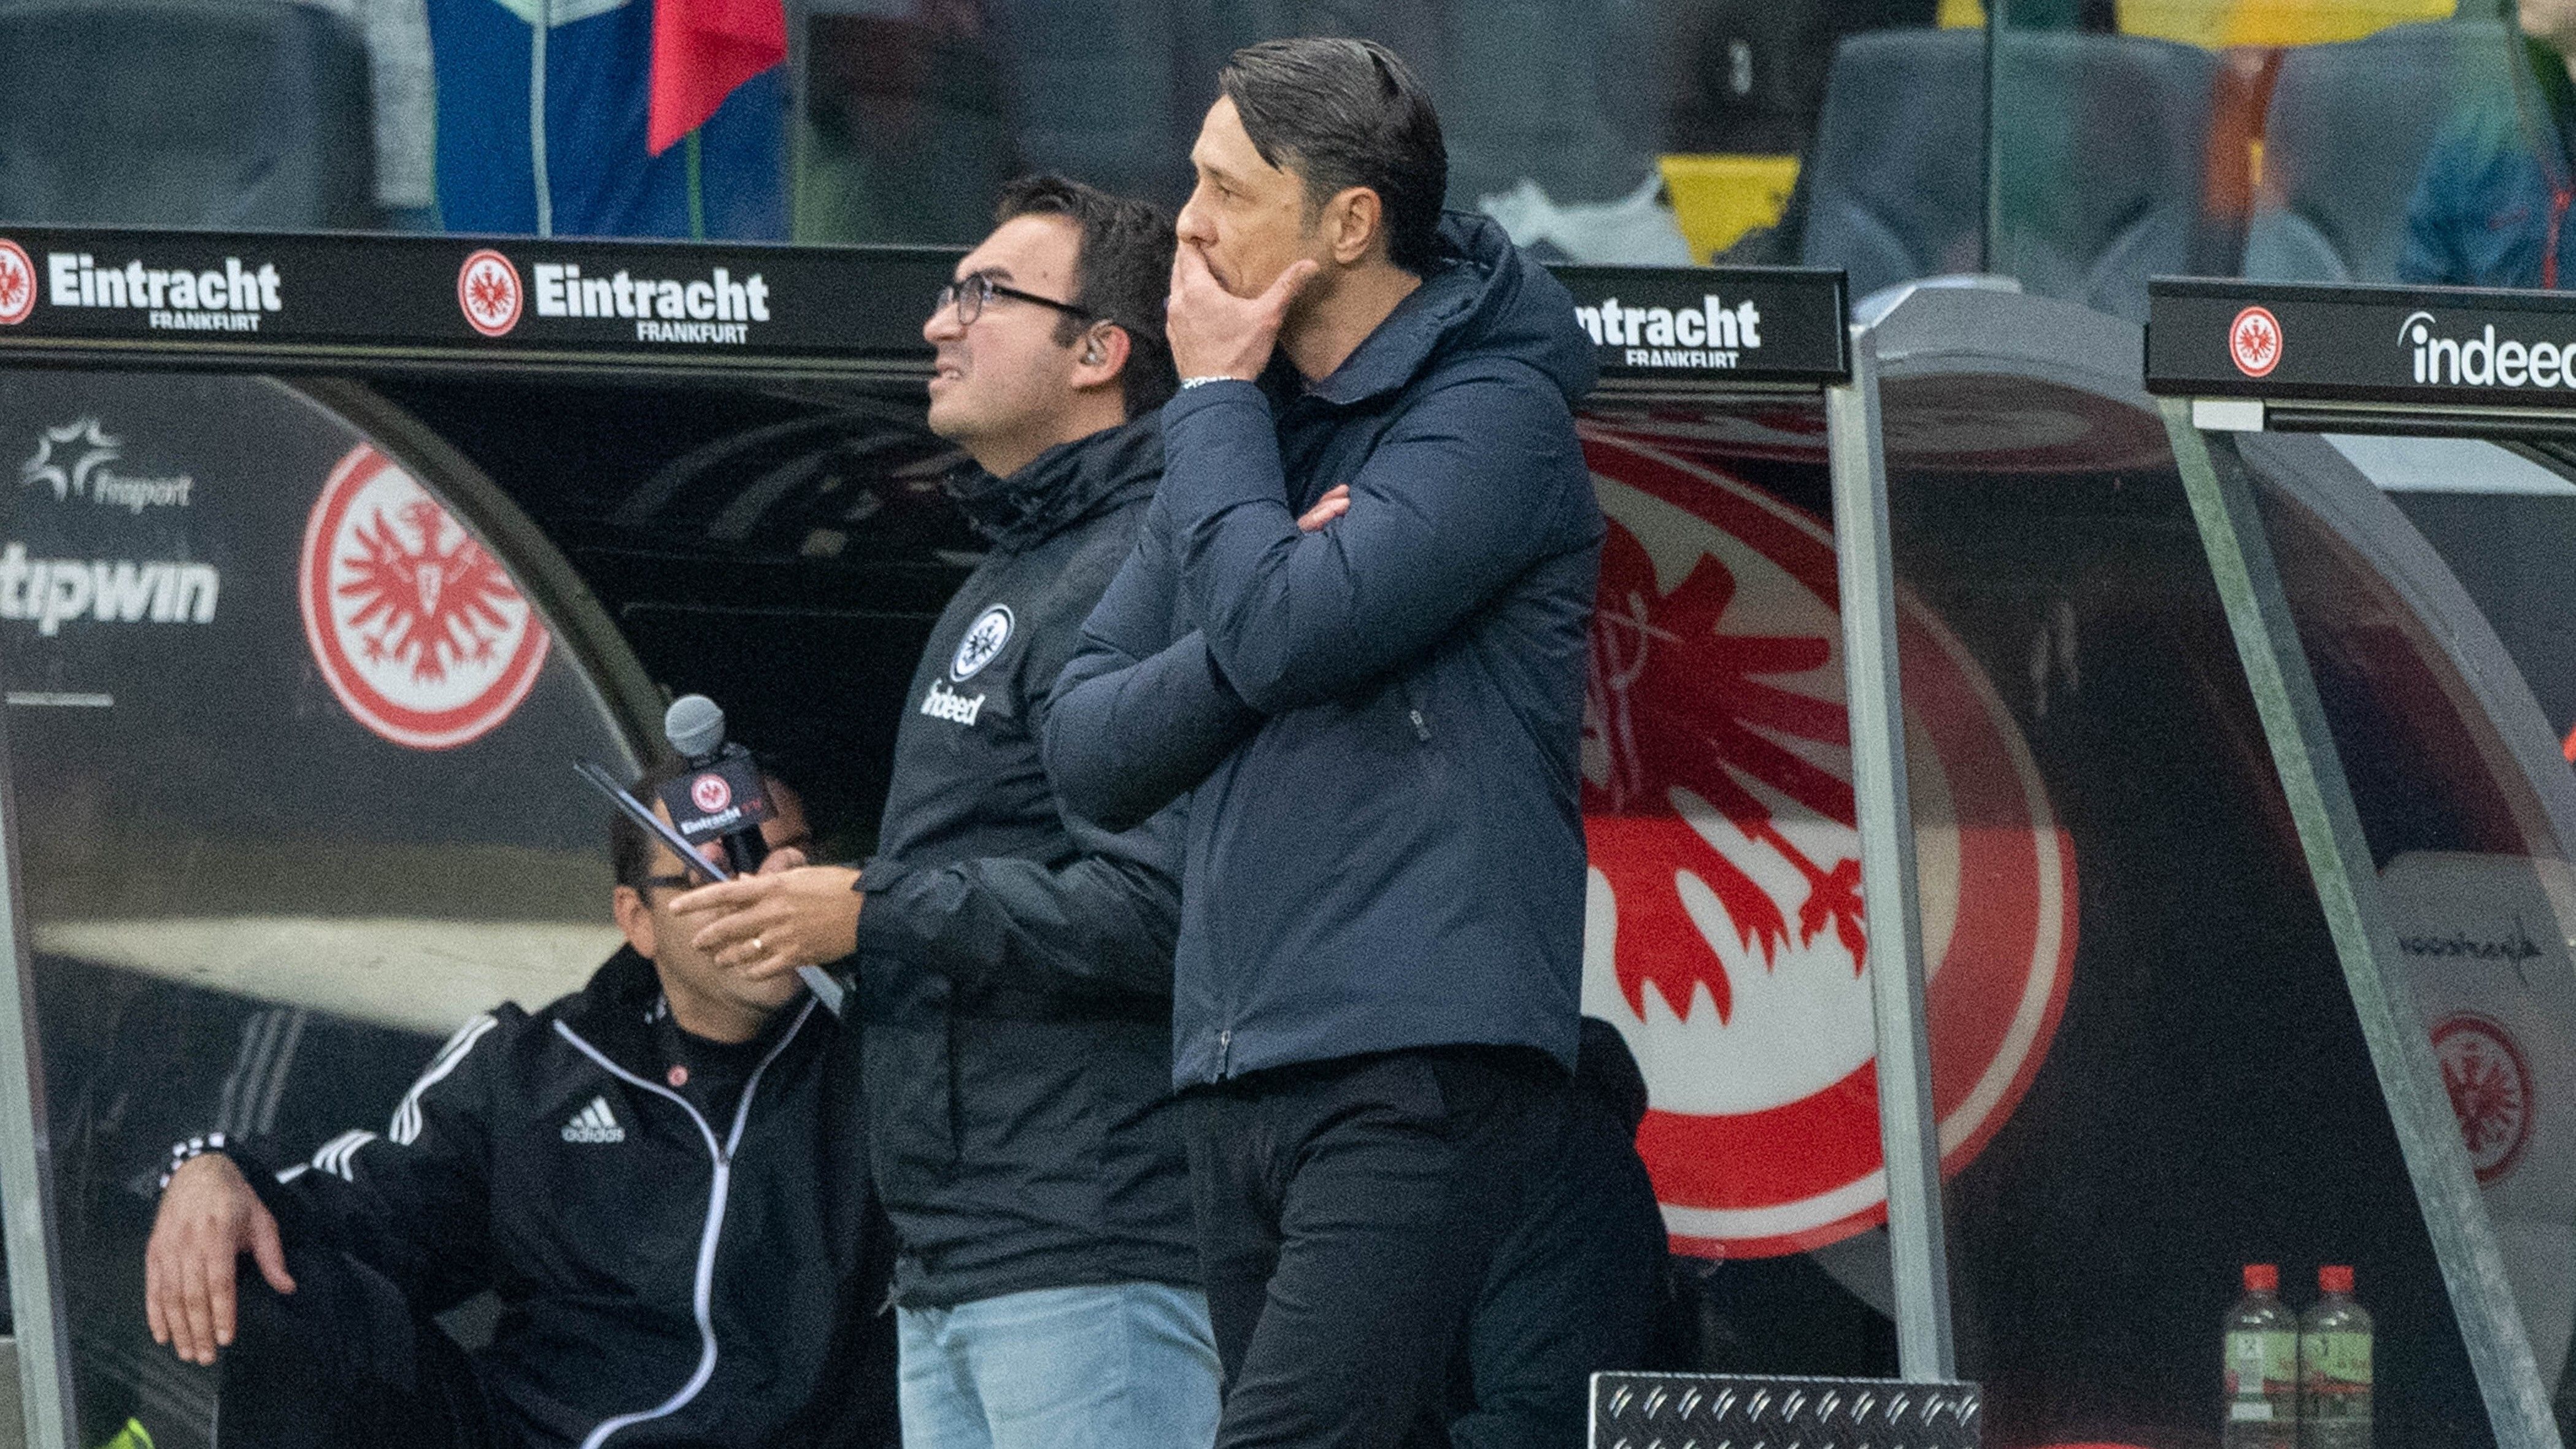 
                <strong>Saison 2019/2020 - Titel Nummer acht</strong><br>
                Dass Trainer und Mannschaft nicht perfekt harmonieren, war schon früh zu sehen in der Amtszeit von Kovac. Um den Kroaten zu unterstützen, bekam er deswegen Hansi Flick als Co-Trainer an die Seite gestellt. Es war ein kluger Schachzug der Klubführung, denn die Bayern-Profis konnten sich auch in der neuen Saison nicht mit dem Kovac-Fußball anfreunden. Nach einem 1:5 in Frankfurt endete das Kapitel.
              